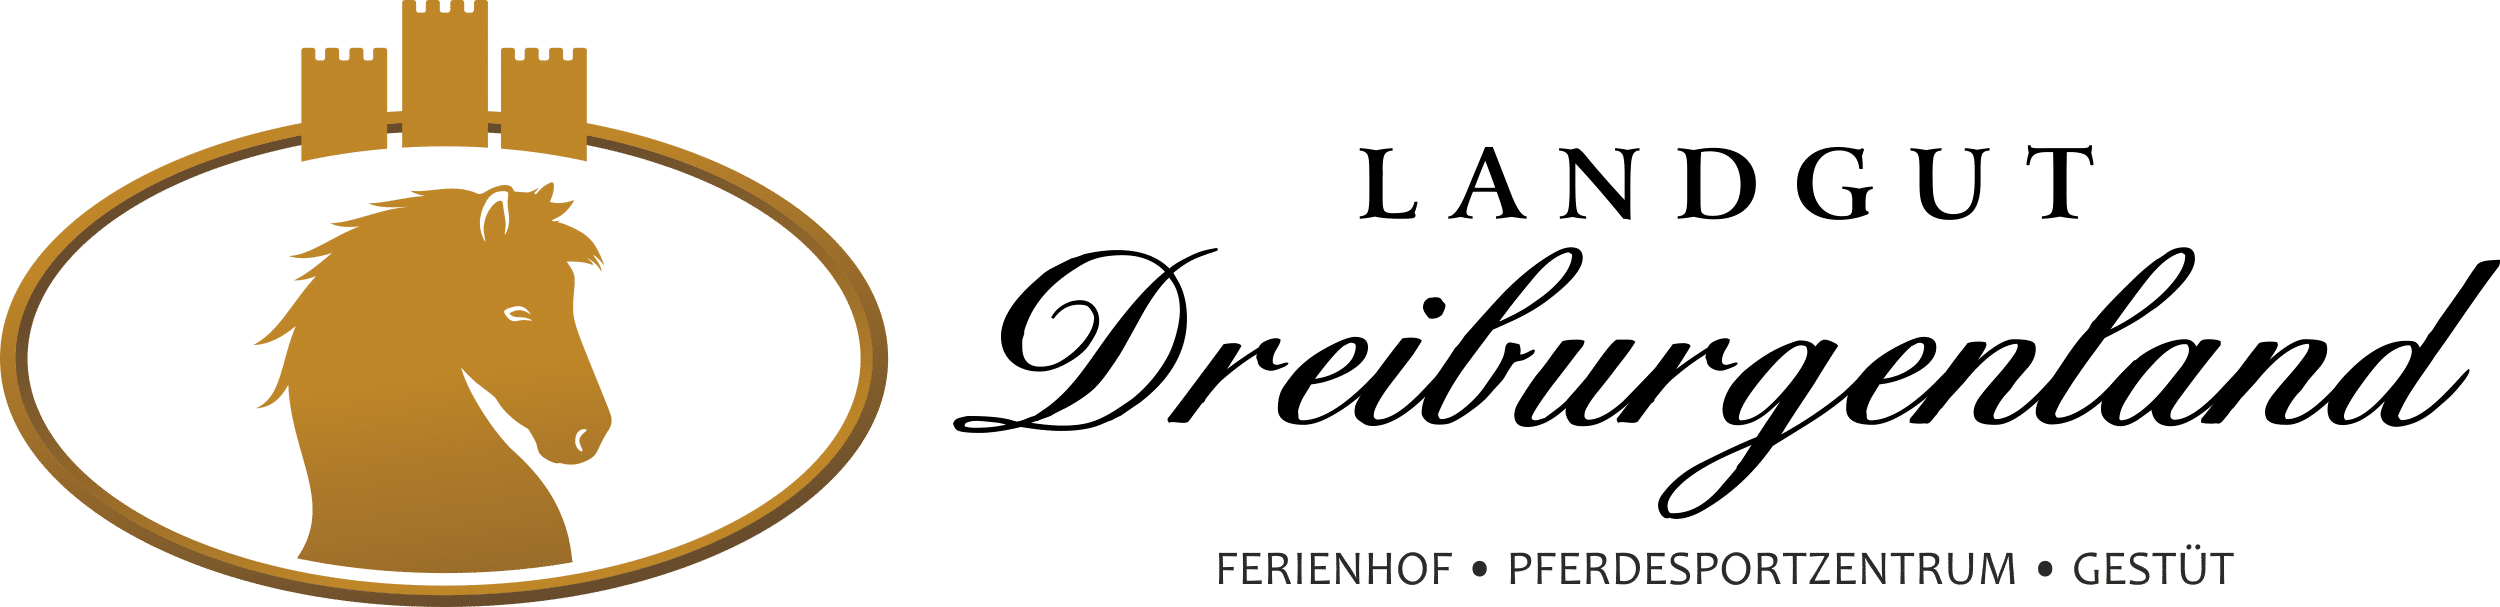 Ferienhof, Pferdesportzentrum und Gestüt "Landgut Dreiburgenland" | Ferienwohnungen auf unserem Reiterhof - Landgut-Dreiburgenland